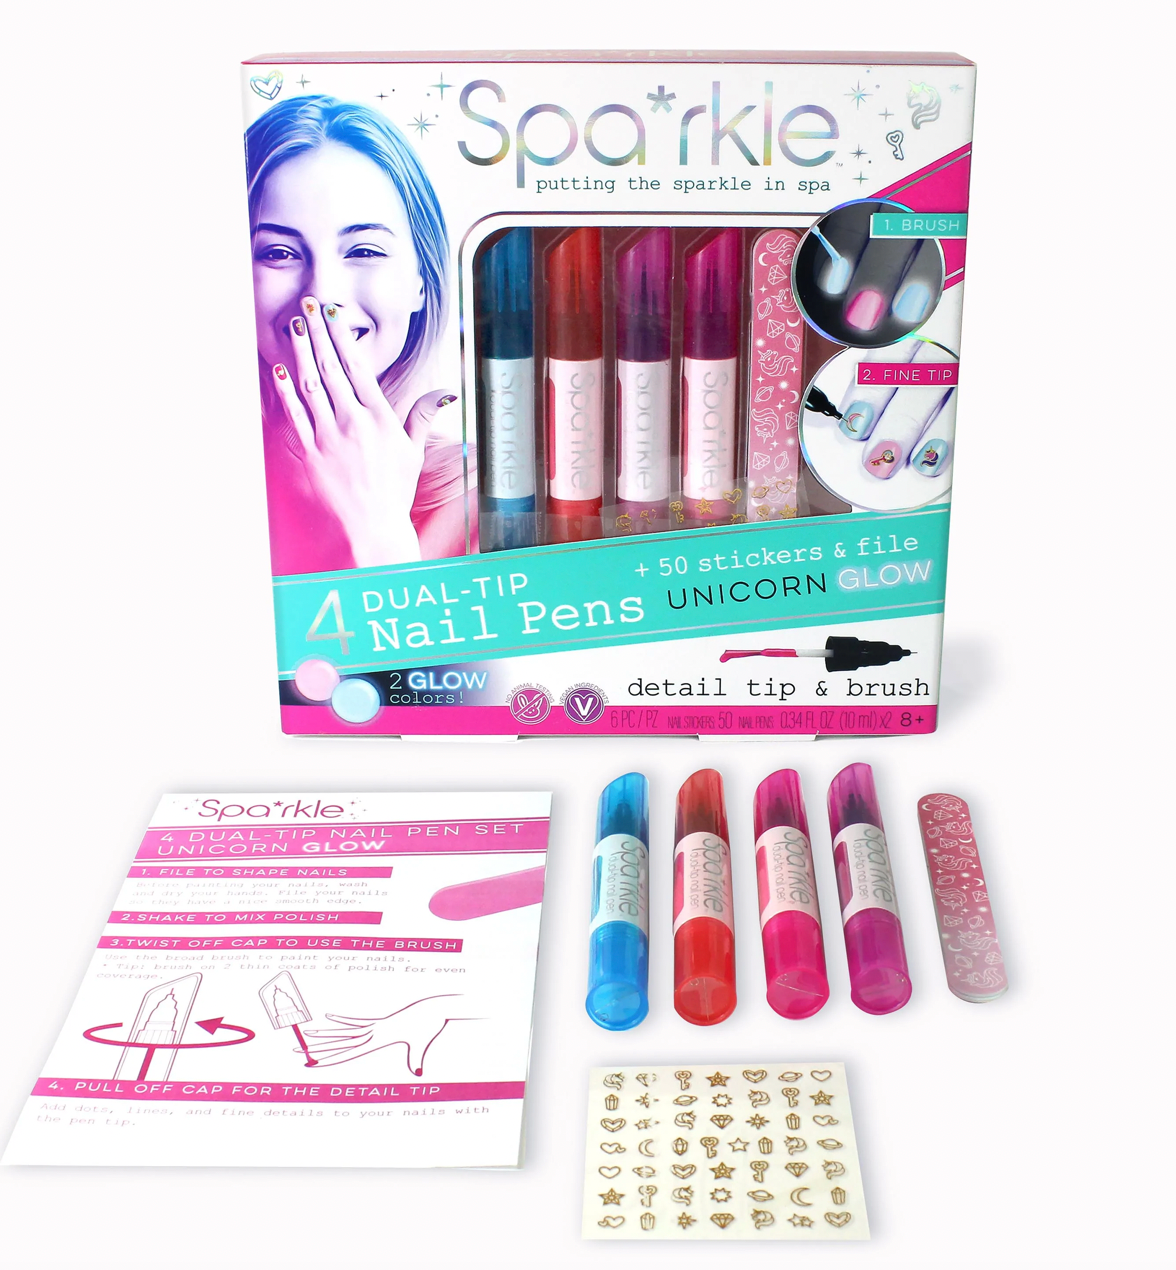 Spa*rkle 4 Dual-Tip Nail Pens Unicorn Glow Set